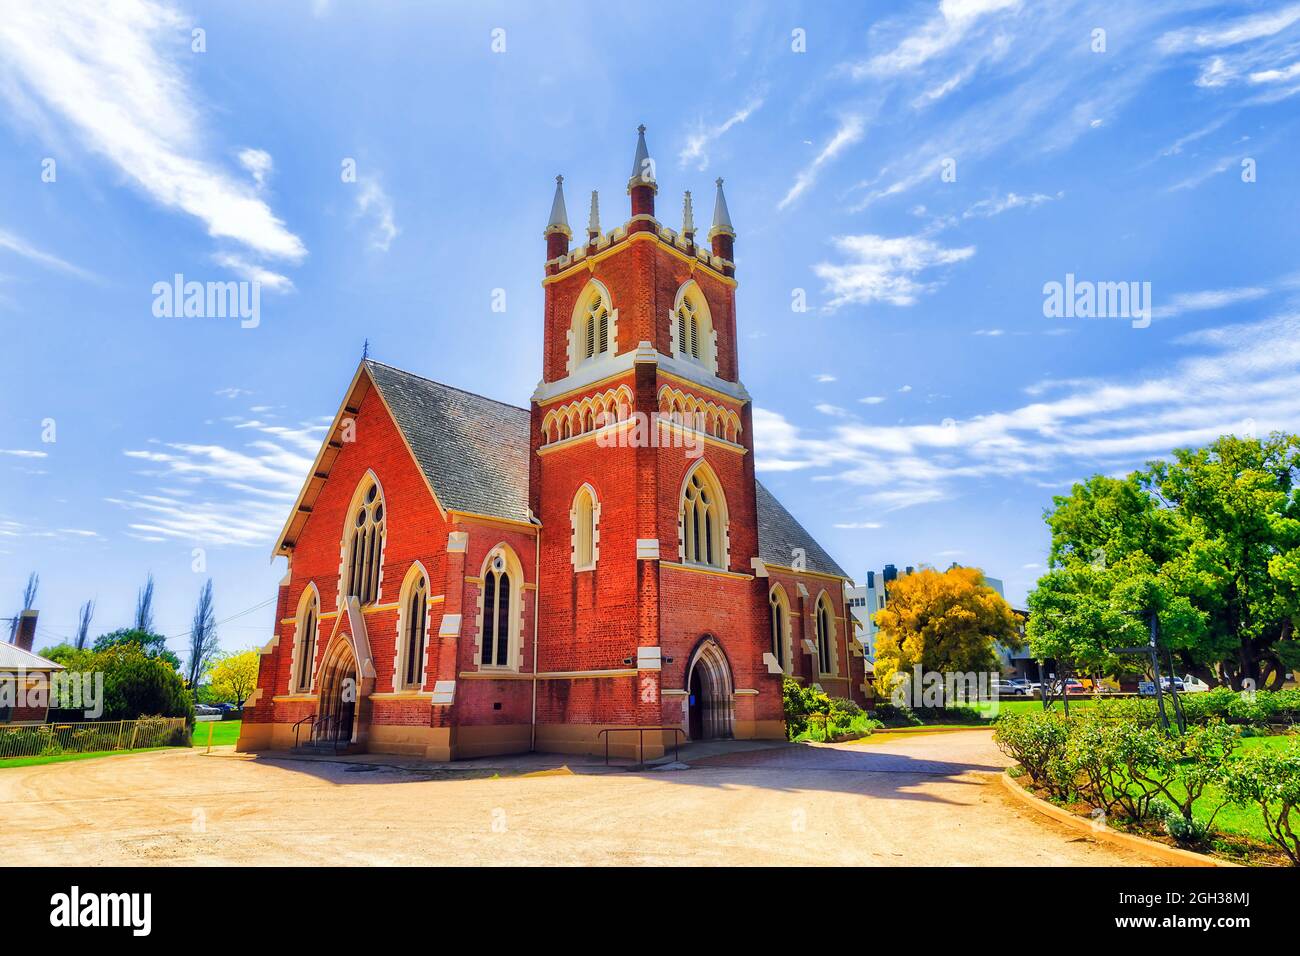 Edificio storico della chiesa patrimonio nel mezzo del parco pubblico a Mudgee città di Rural NSW, Australia. Foto Stock